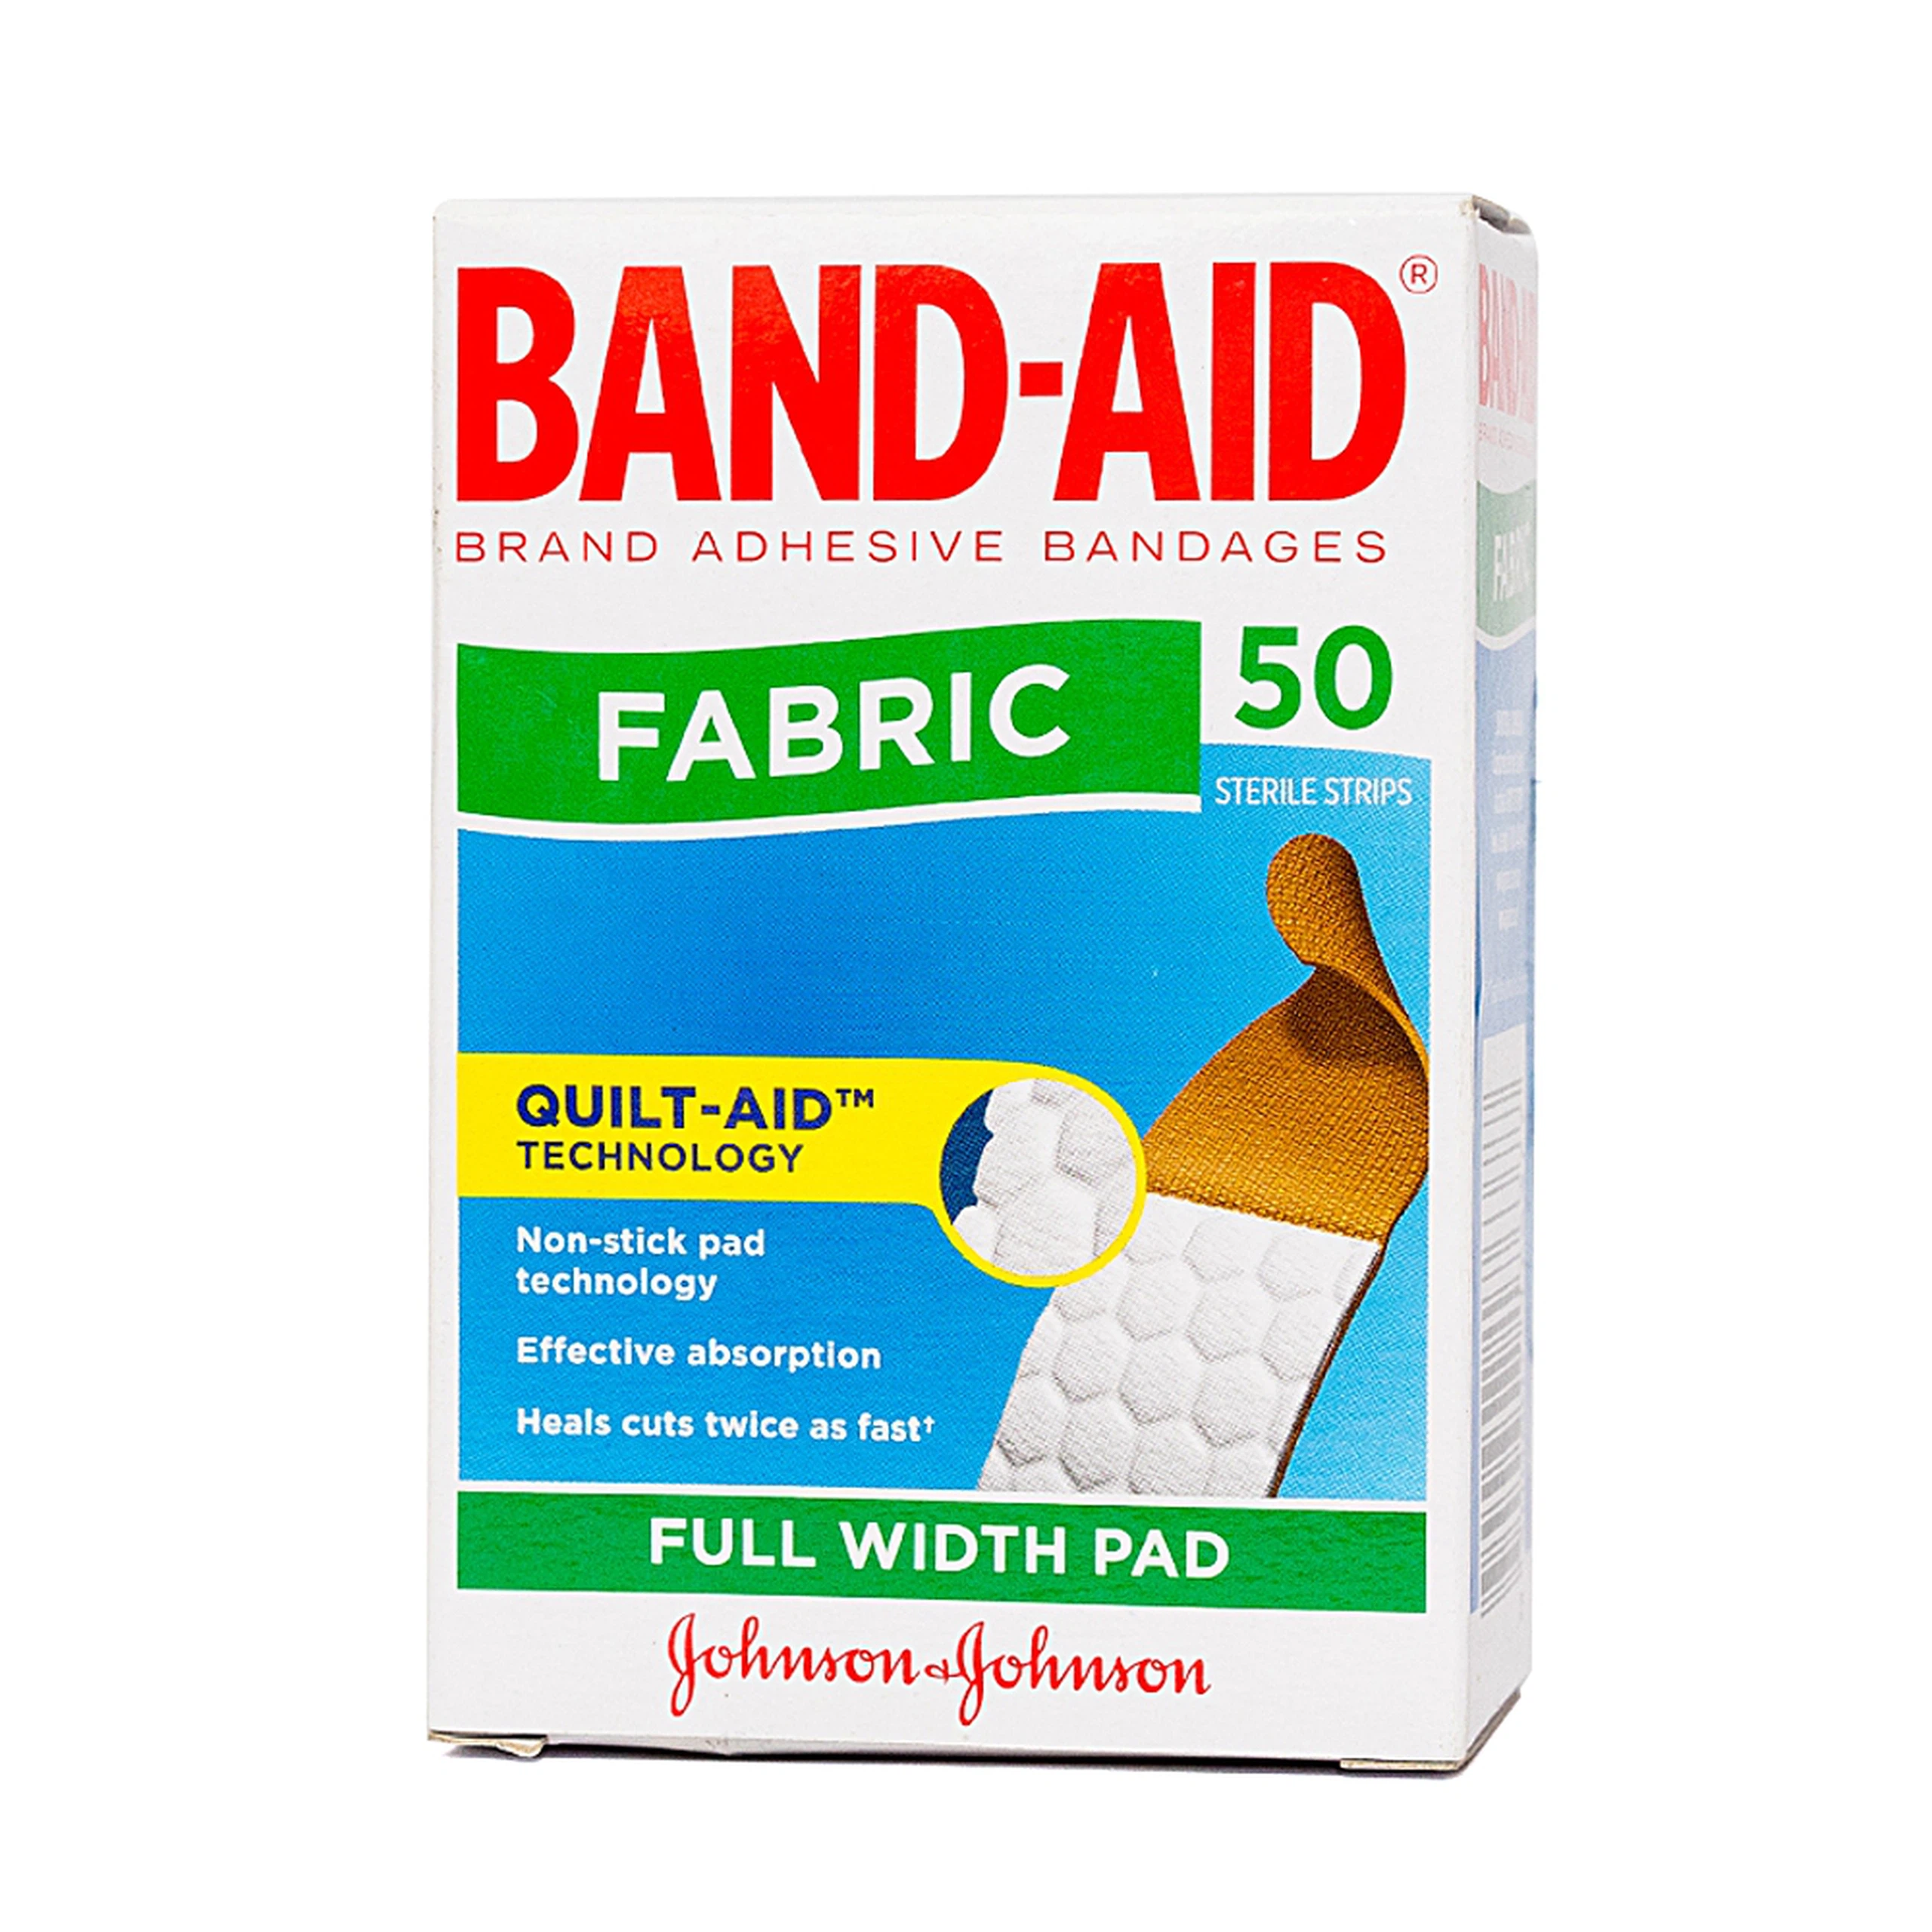 Băng cá nhân Johnson's Band-Aid ngừa nhiễm trùng, giúp vết thương mau lành (50 miếng) 